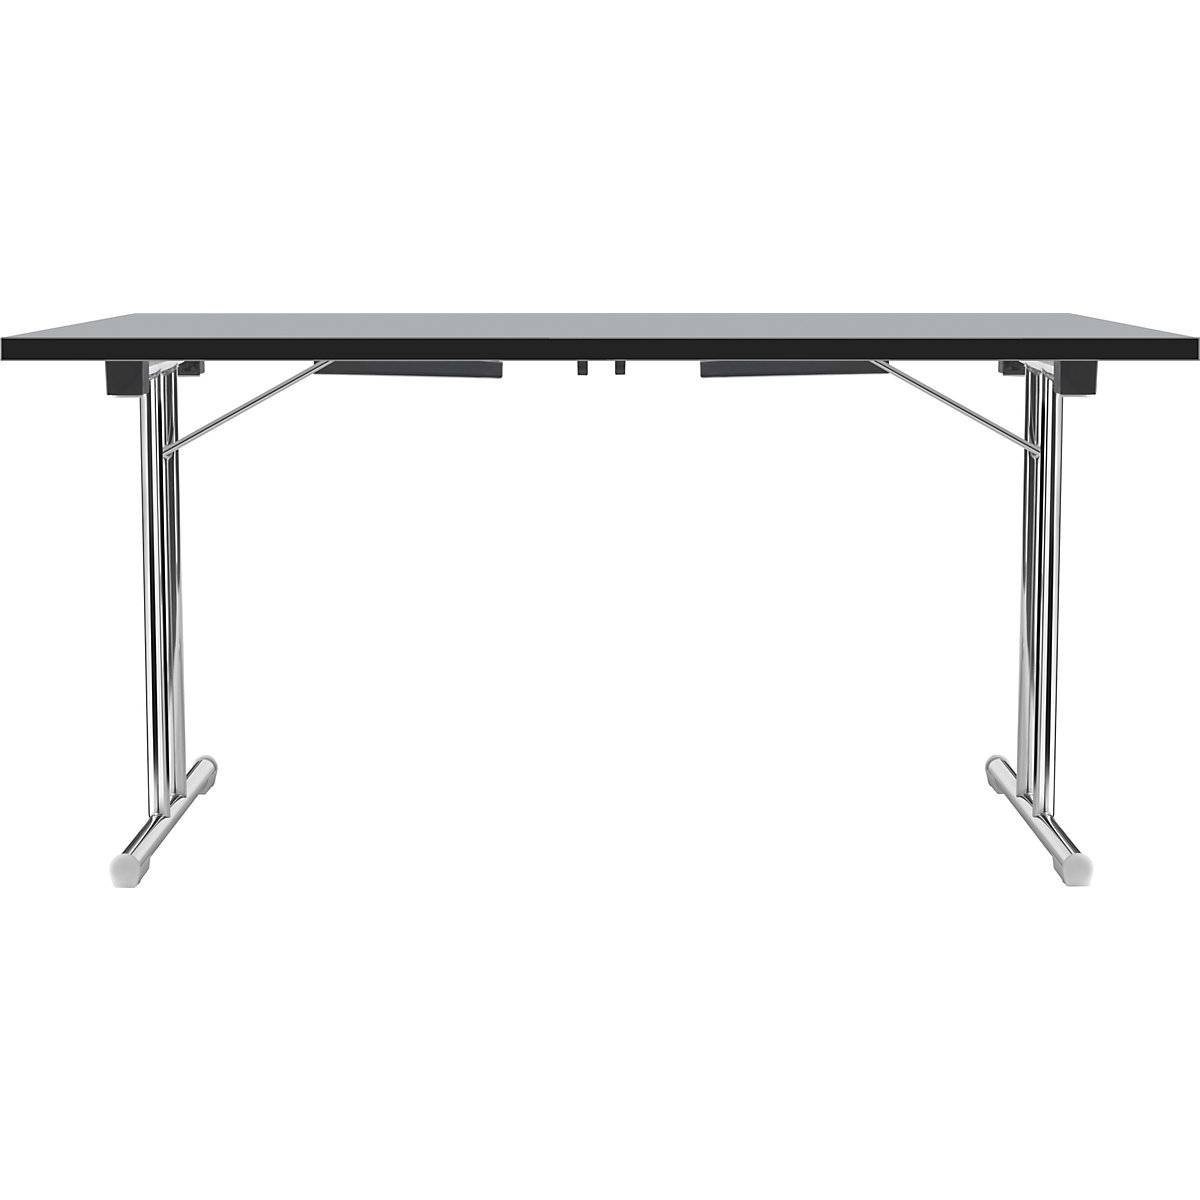 Tavolo pieghevole con basamento a T doppio, telaio in tubo tondo d'acciaio, cromato, grigio chiaro/nero, largh. x prof. 1200 x 600 mm-5